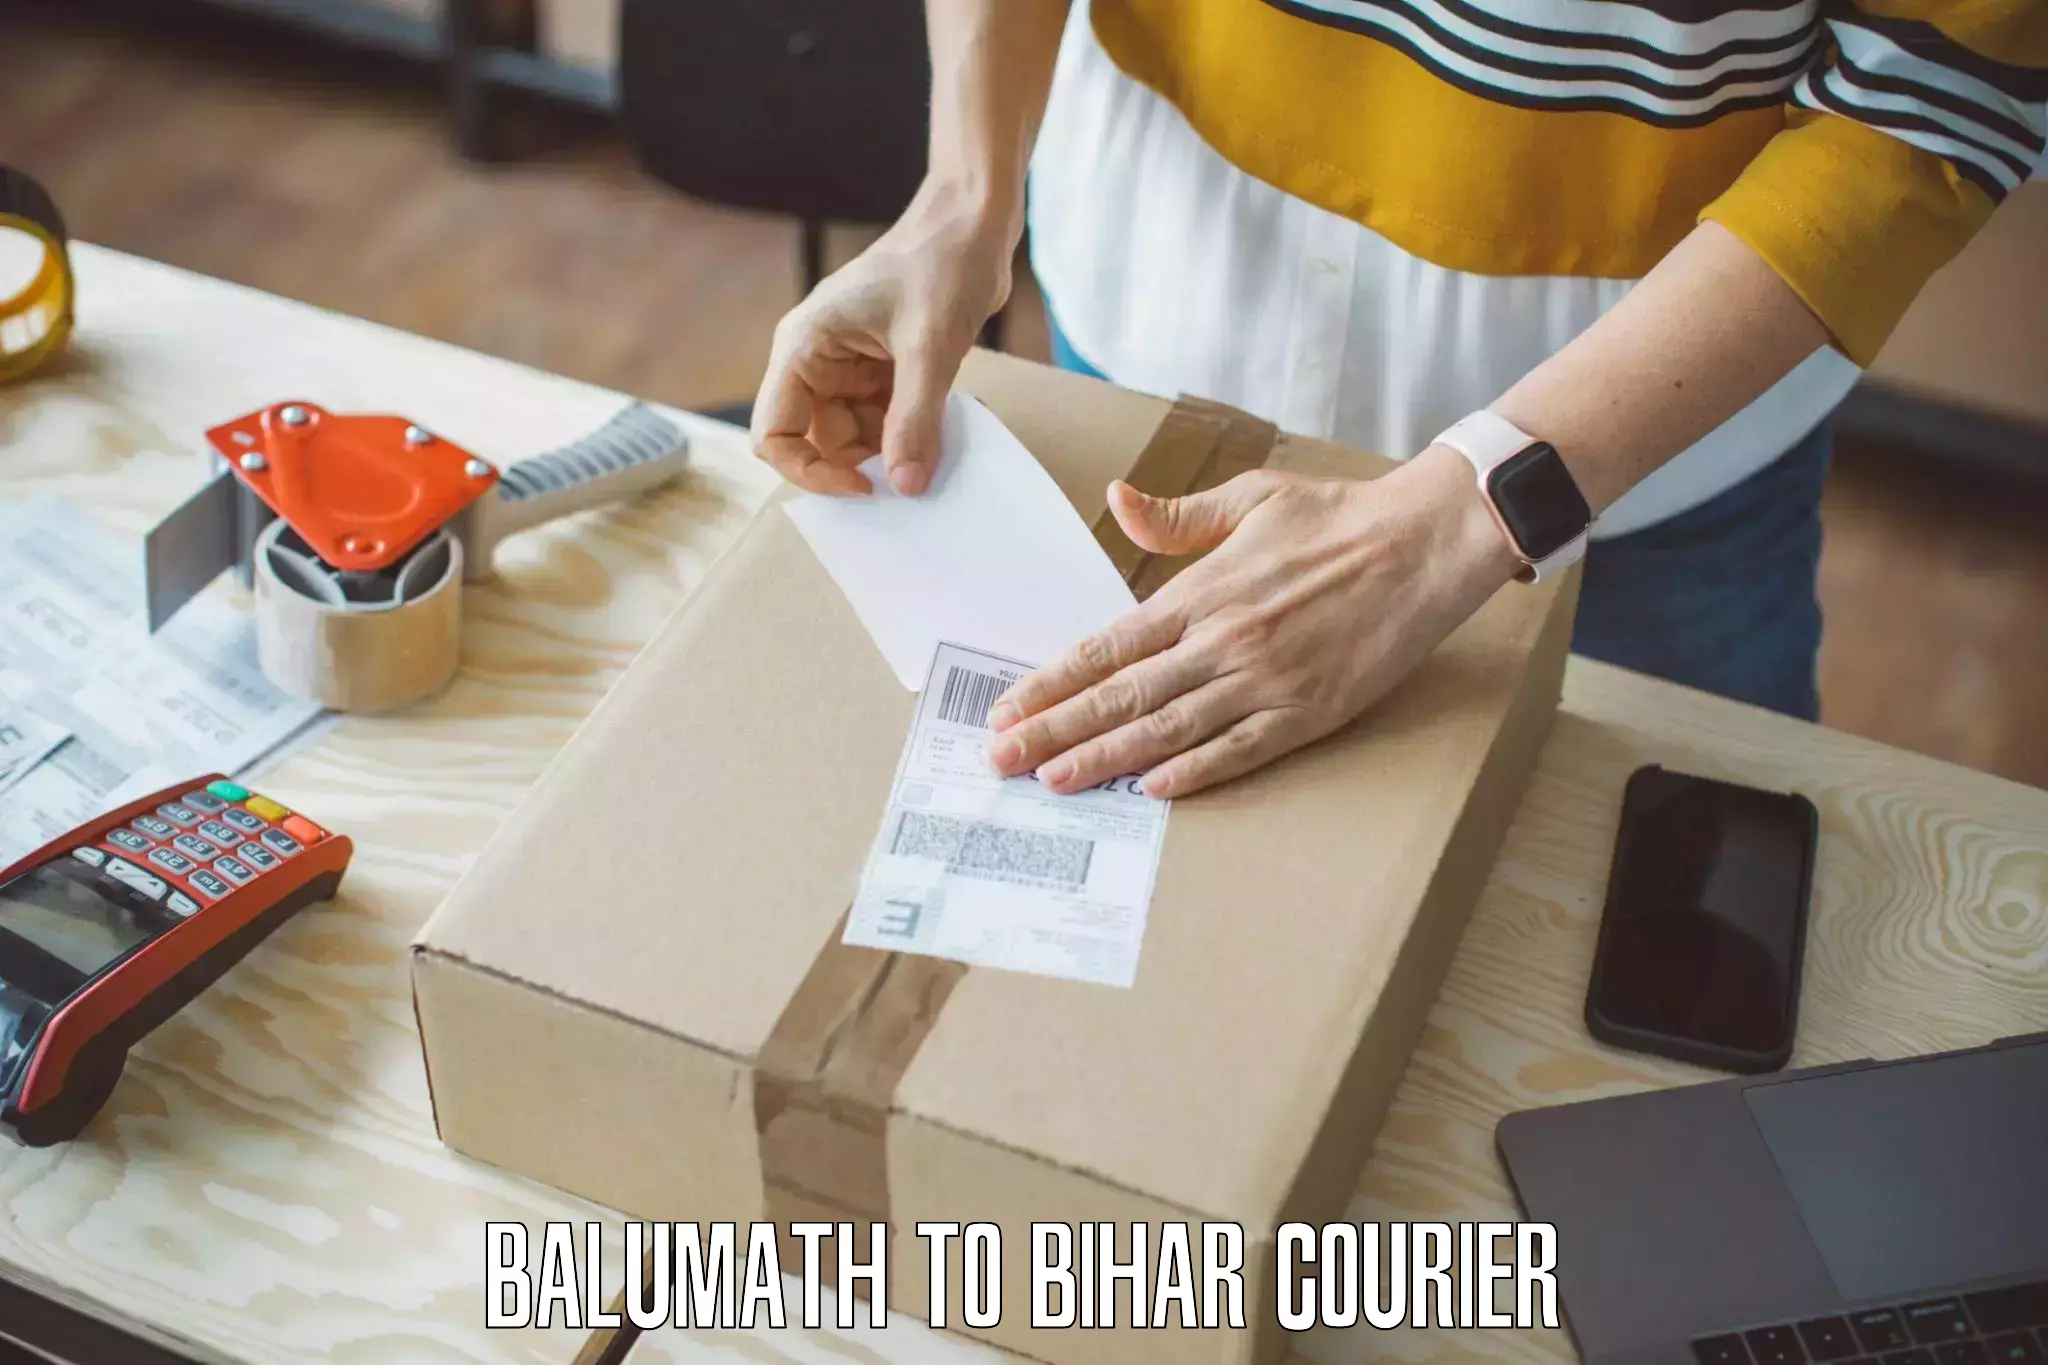 Furniture transport experts Balumath to Bihar